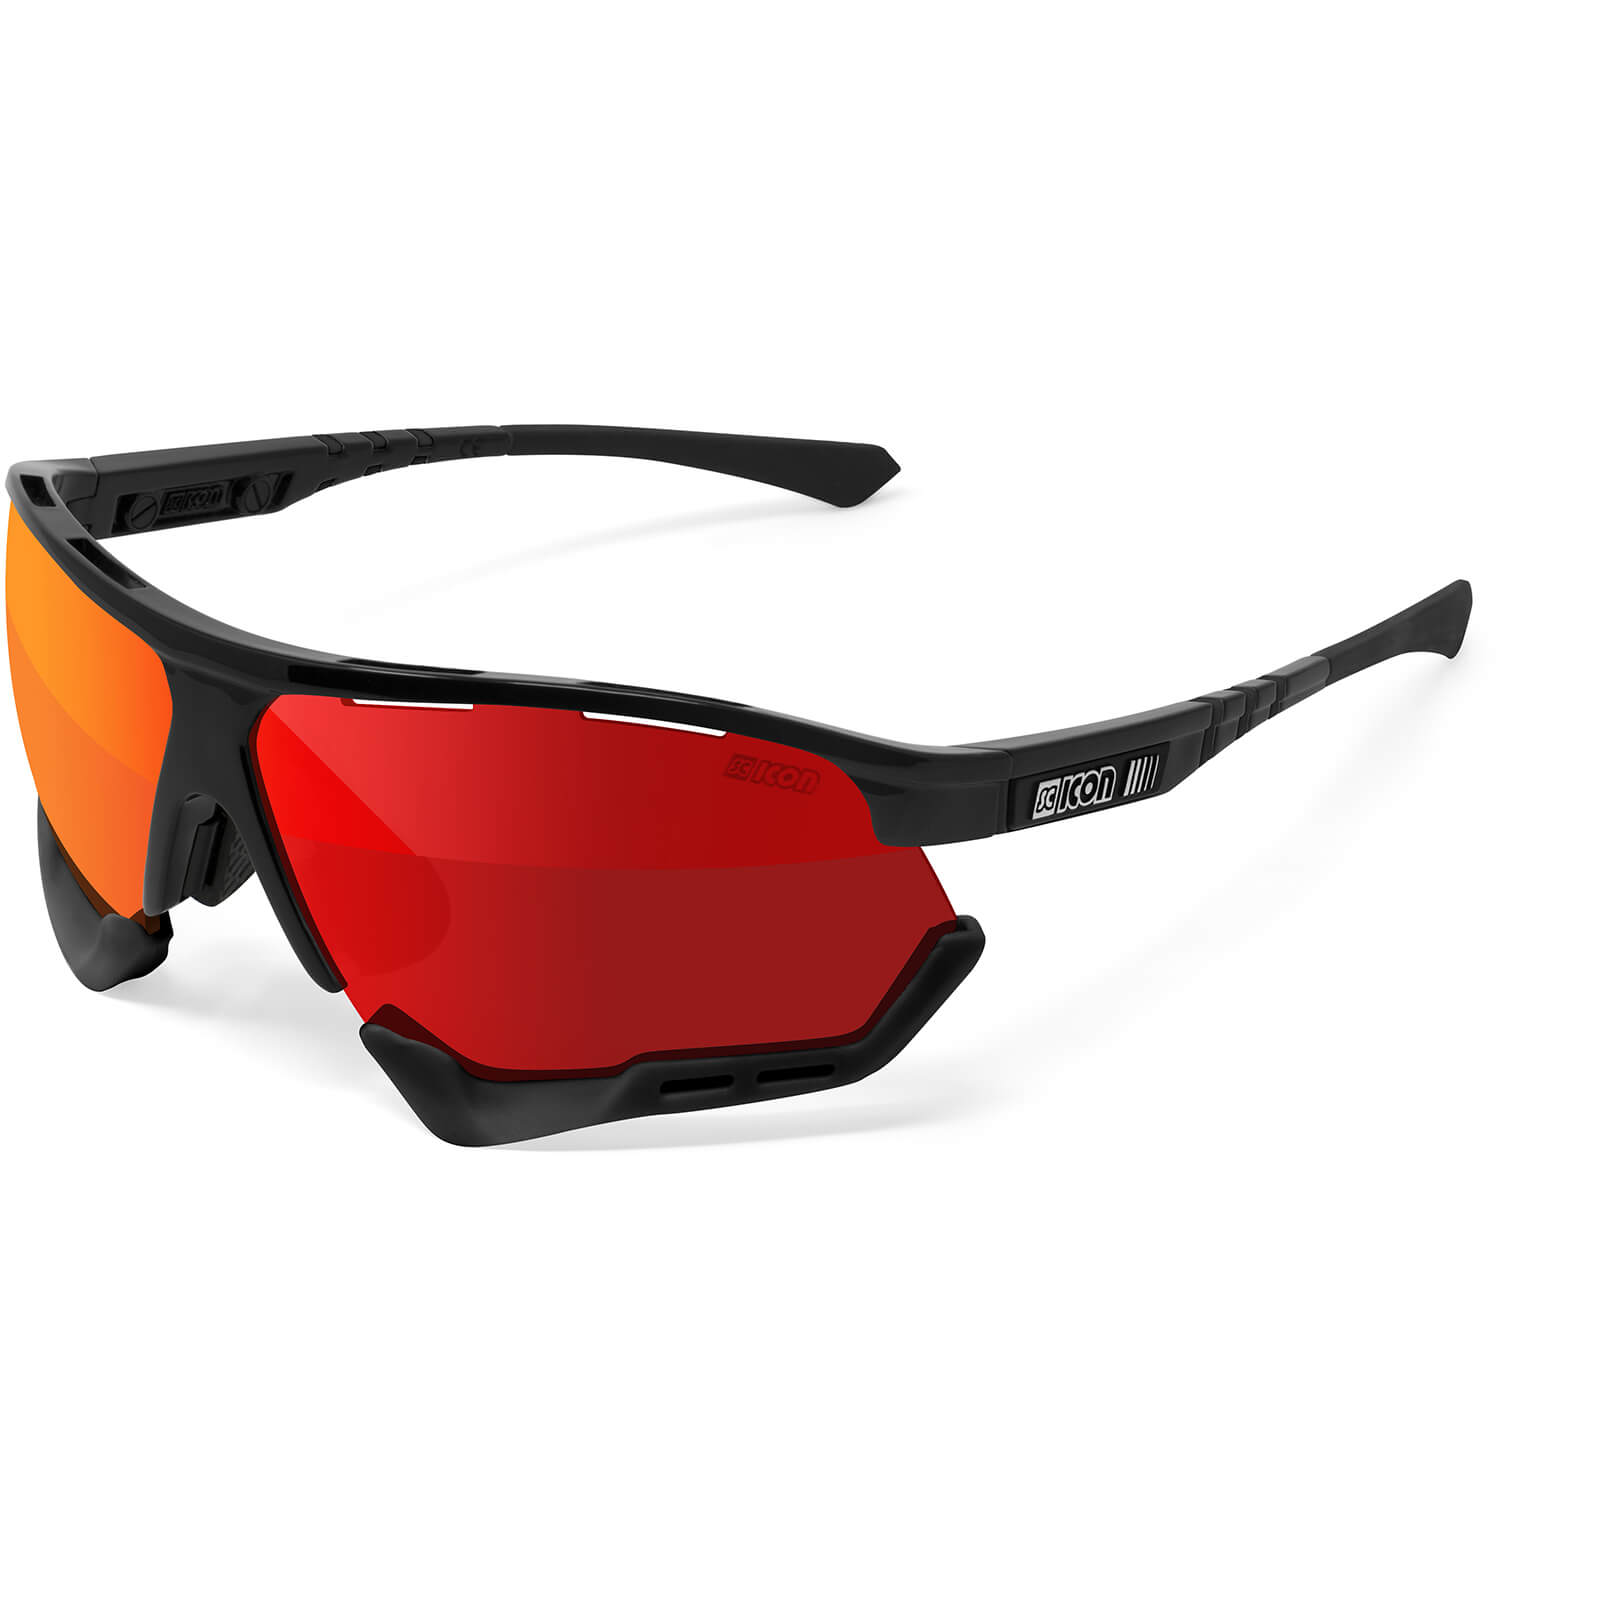 Scicon Aerocomfort XL Road Sunglasses - Black Gloss/SCNPP Multimirror Red